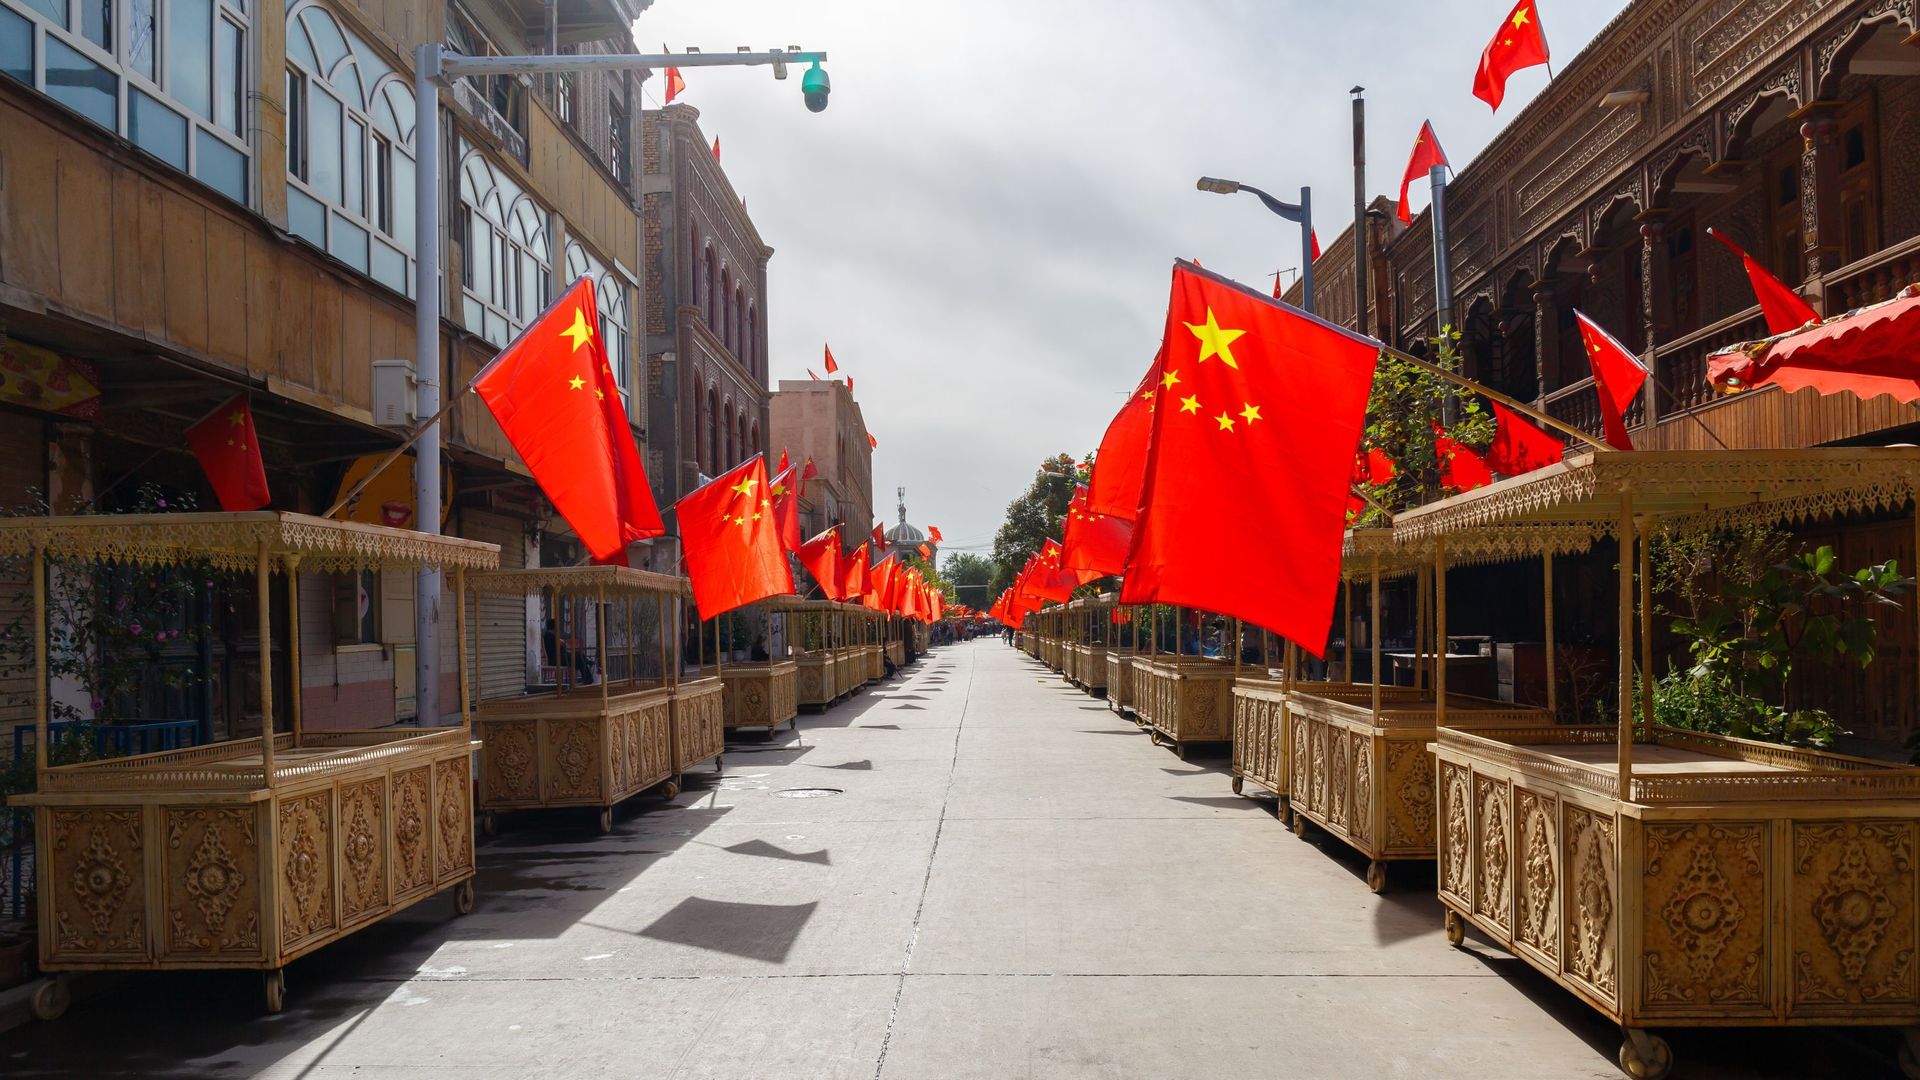 Rue avec des étals de marché dans la vieille ville de Kashgar, avec des drapeaux chinois sur chaque stand, en 2017